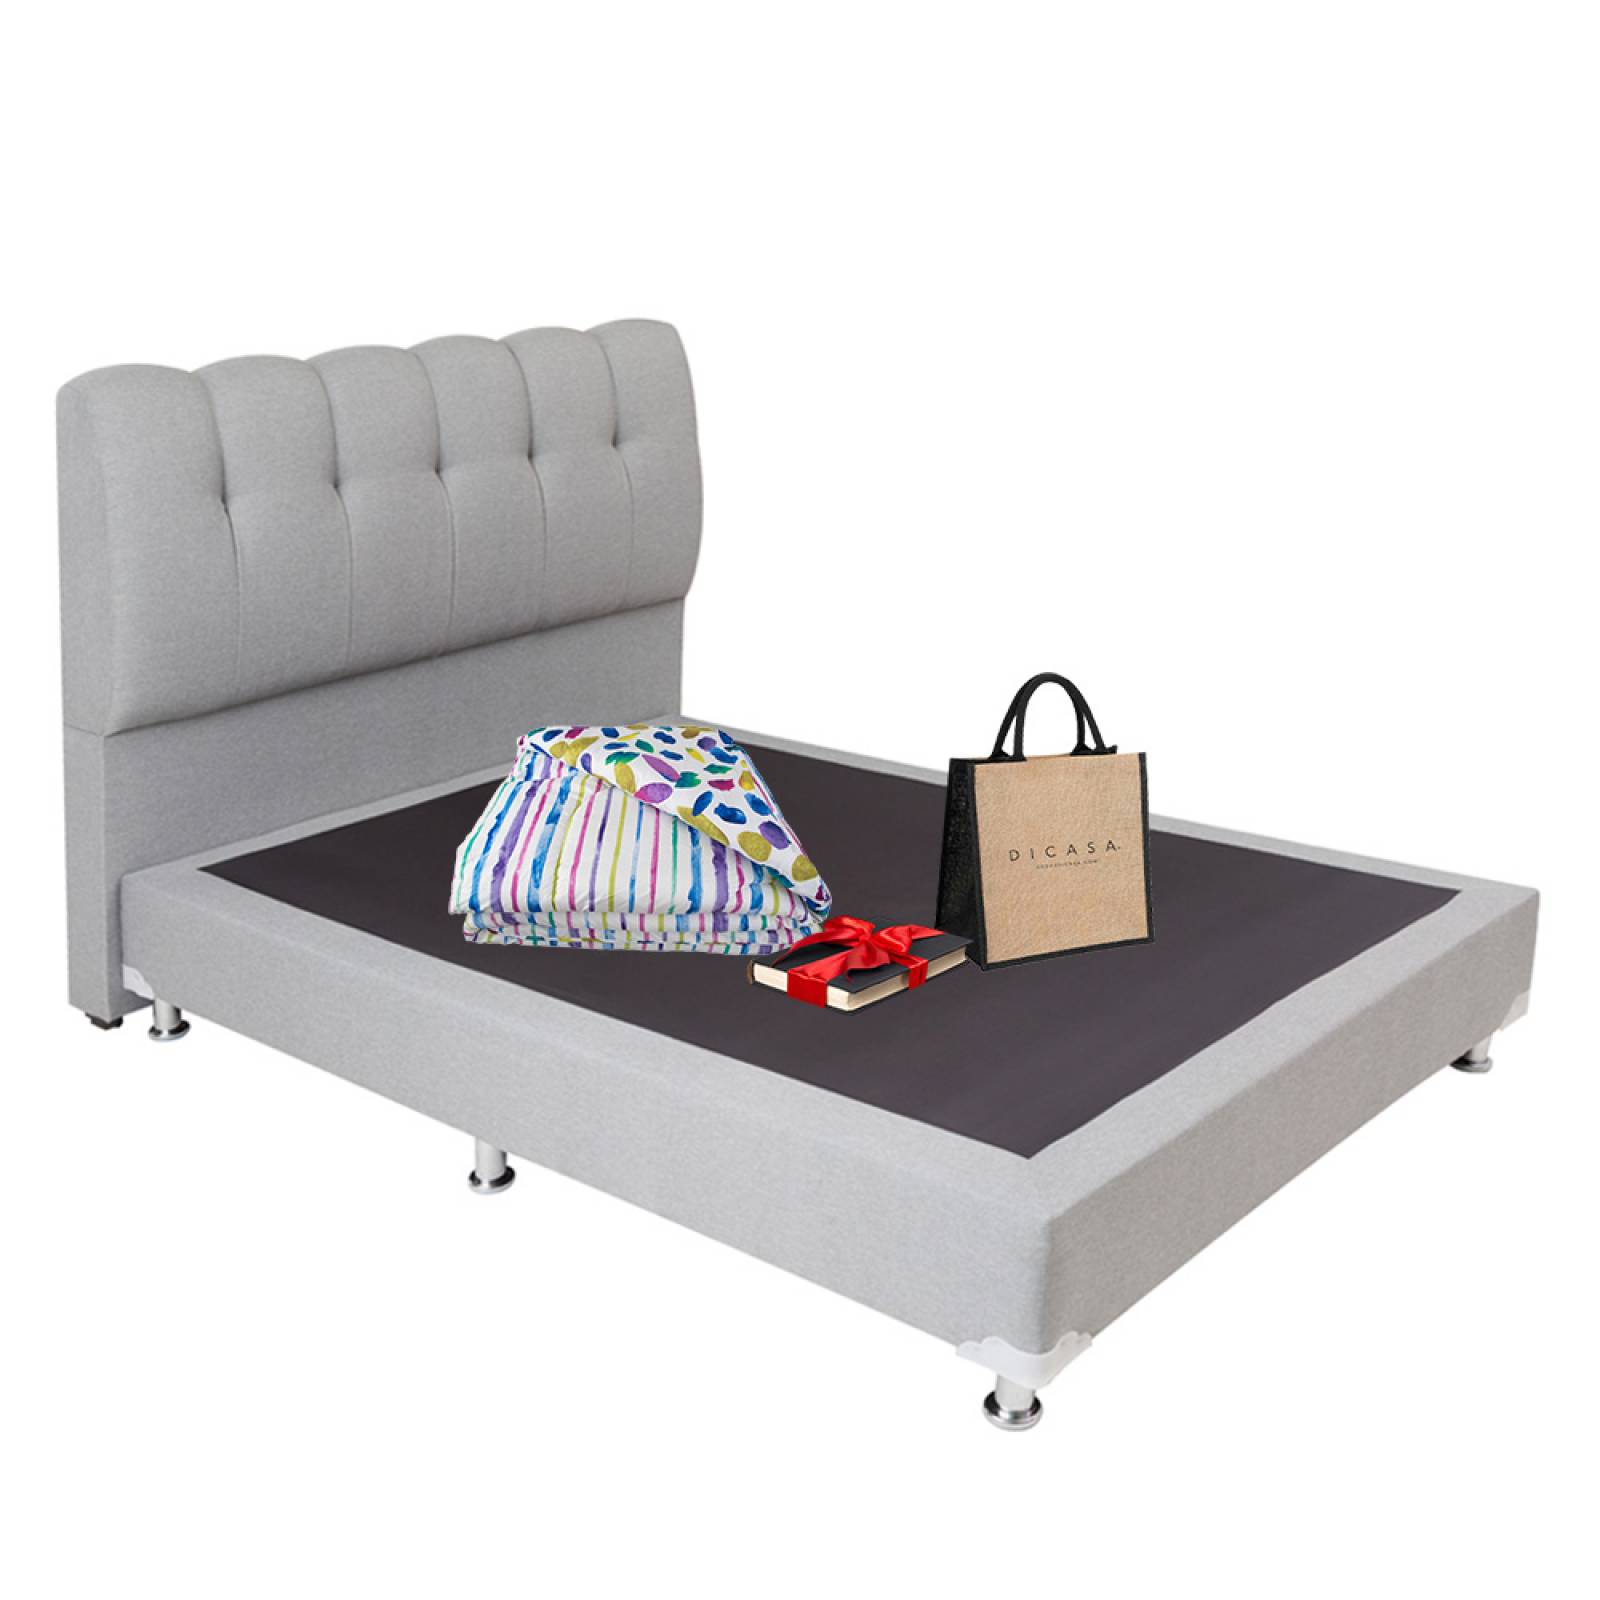 Estructura de cama con cabecera de MDF tapizada en tela poliéster